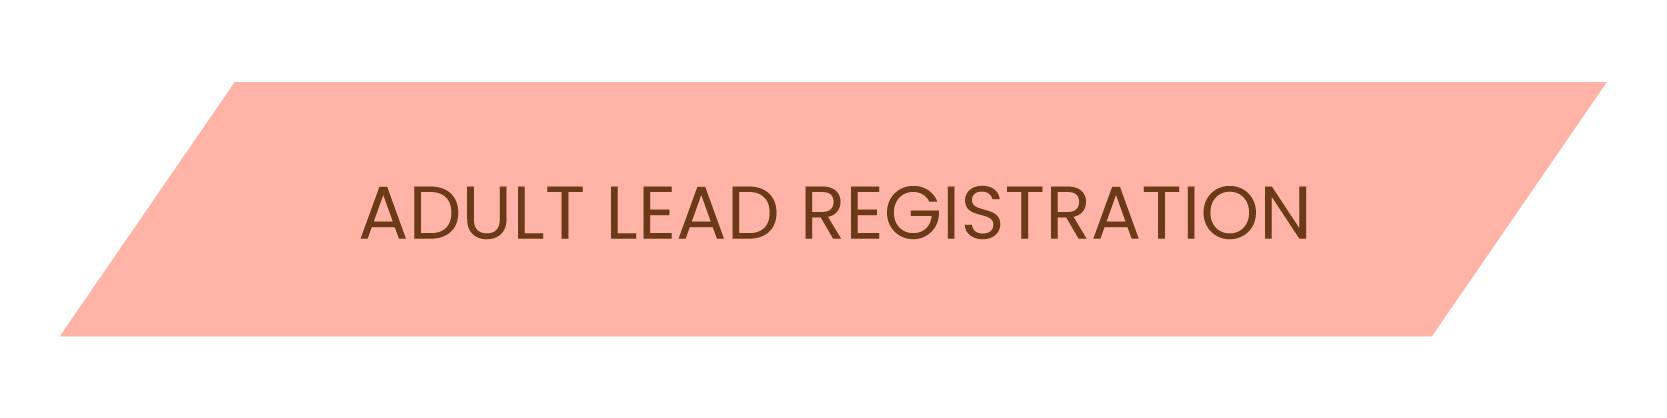 Adult Lead Registration